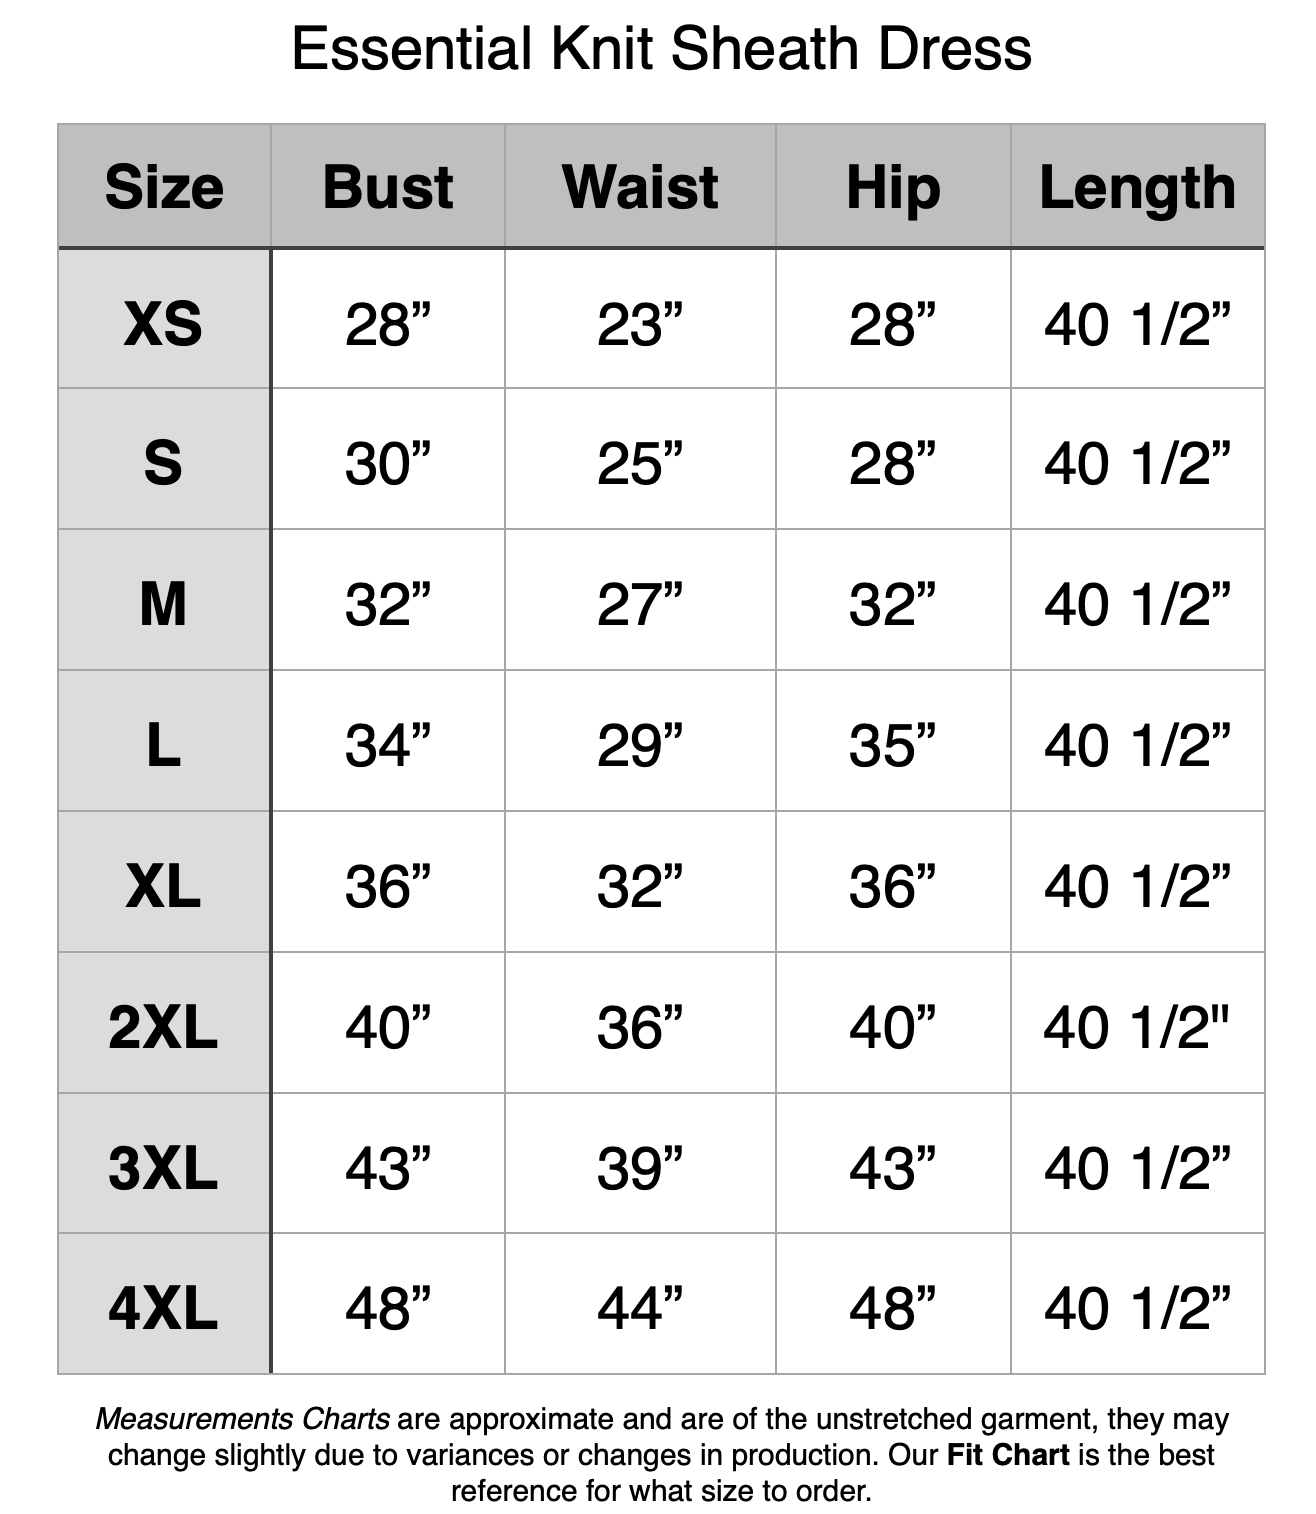 Essential Knit Sheath Dress - XS: 28" Bust, 23" Waist, 28" Hip, 40.5" Length. S: 30" Bust, 25" Waist, 28" Hip, 40.5" Length. M: 32" Bust, 27" Waist, 32" Hip, 40.5" Length. L: 34" Bust, 29" Waist, 35" Hip, 40.5" Length. XL: 36" Bust, 32" Waist, 36" Hip, 40.5" Length. 2XL: 40" Bust, 36" Waist, 40" Hip, 40.5" Length. 3XL: 43" Bust, 39" Waist, 43" Hip, 40.5" Length. 4XL: 48" Bust, 44" Waist, 48" Hip, 40.5" Length.